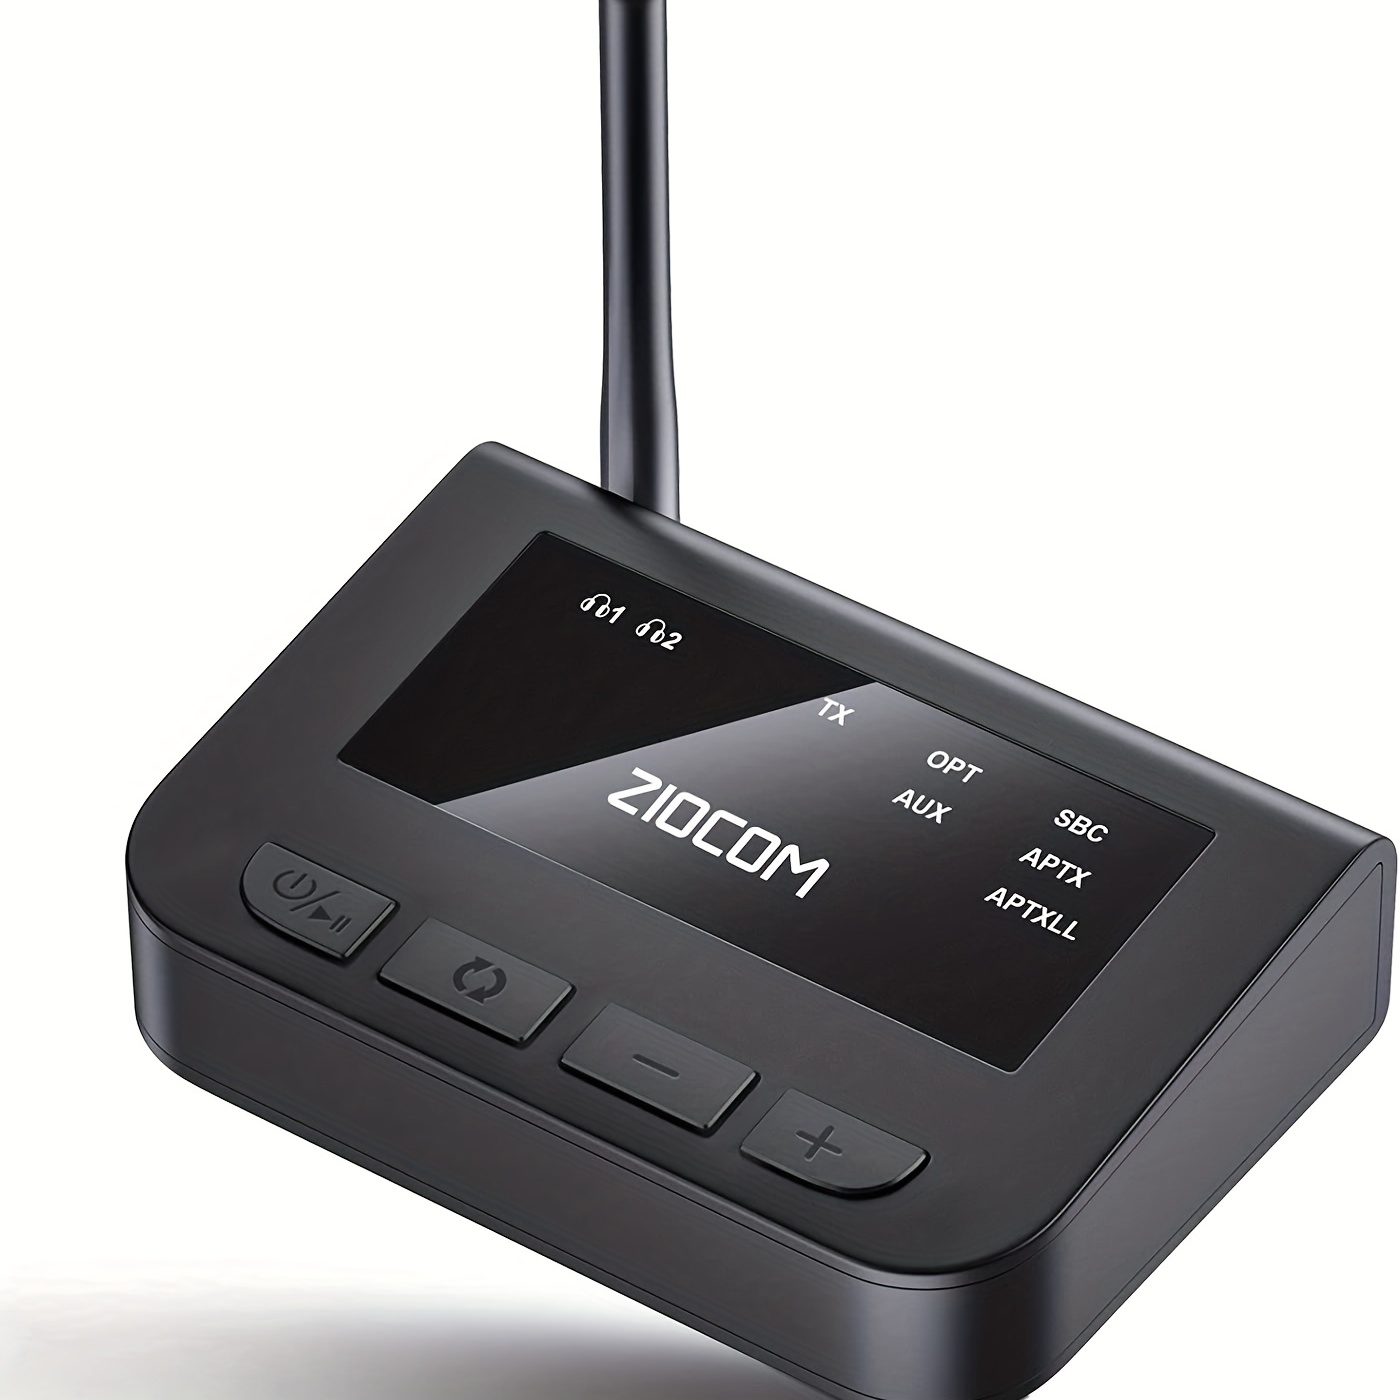  LAICOMEIN V5.0 - Receptor transmisor Bluetooth 2 en 1,  transmisor inalámbrico para TV, PC, MP3, gimnasio, avión, receptor Bluetooth  para altavoces, auriculares, barco, coche : Electrónica